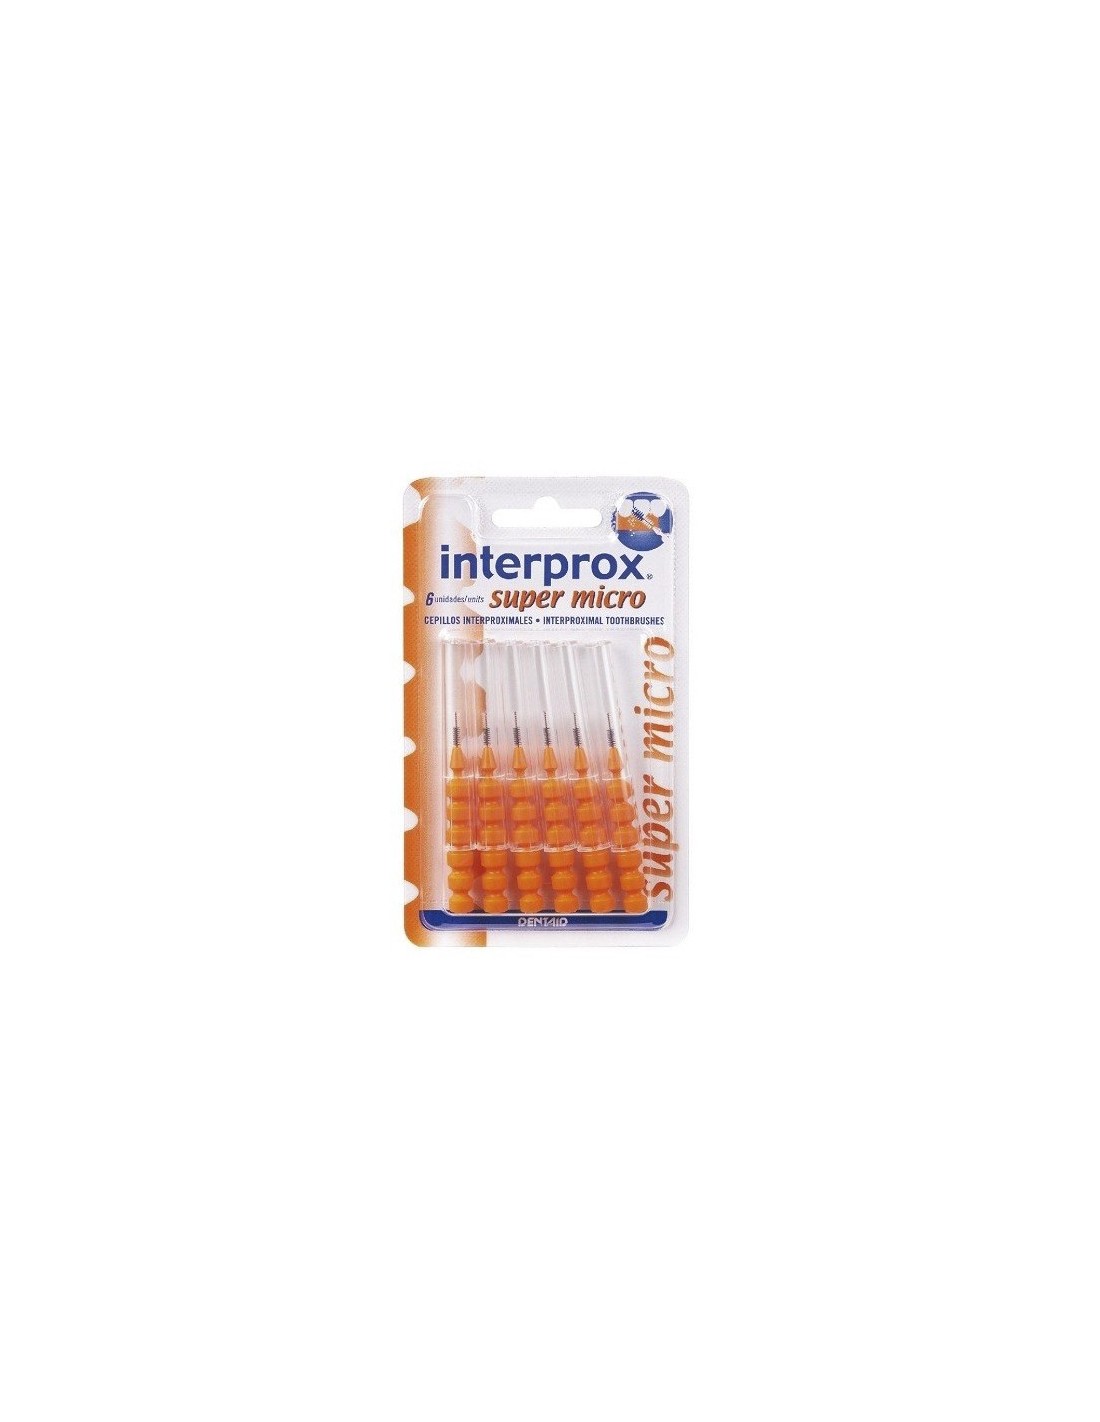 Cepillo Interprox Super Micro 6 uds.